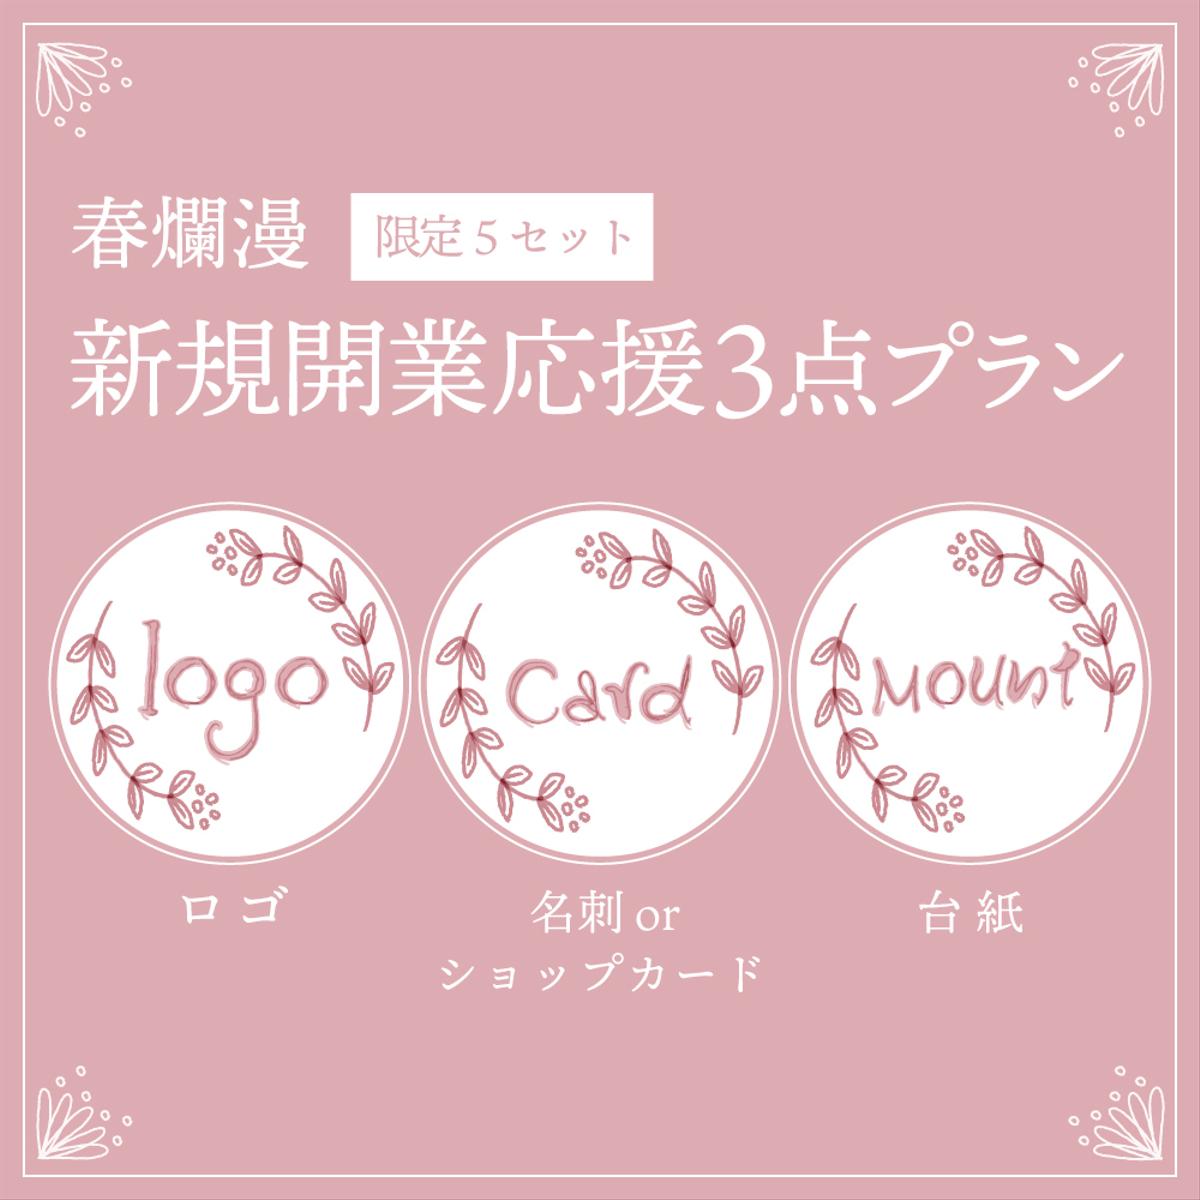 【新規開業応援プラン3セット】ロゴ・名刺（ショップカード）・台紙の作成